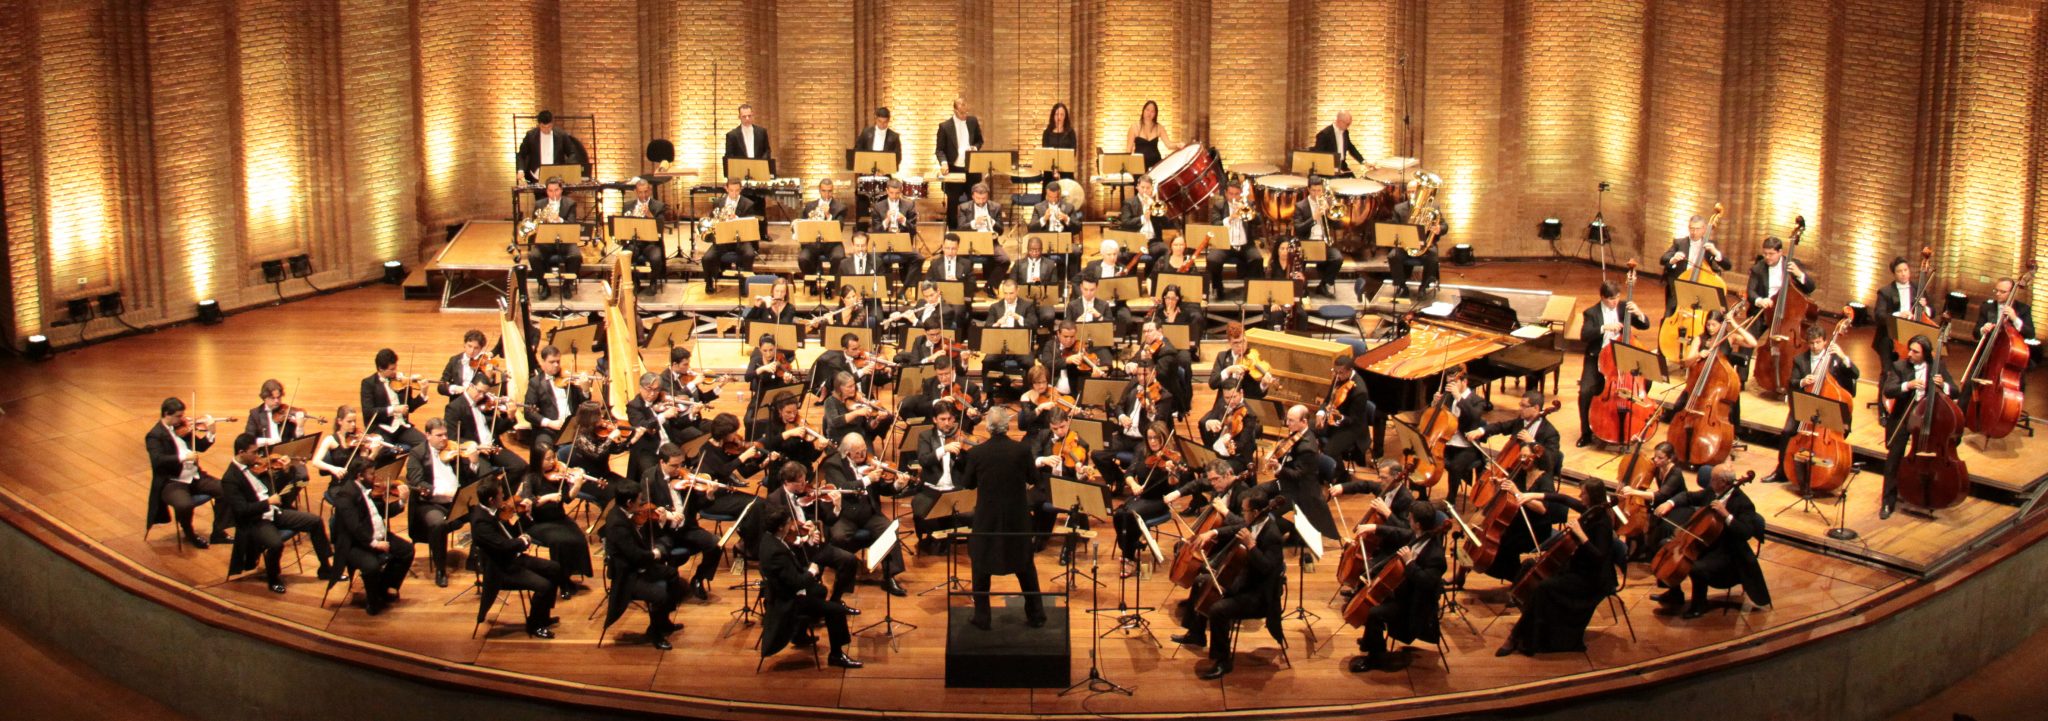 orquestra - Onde ouvir boa música clássica em São Paulo